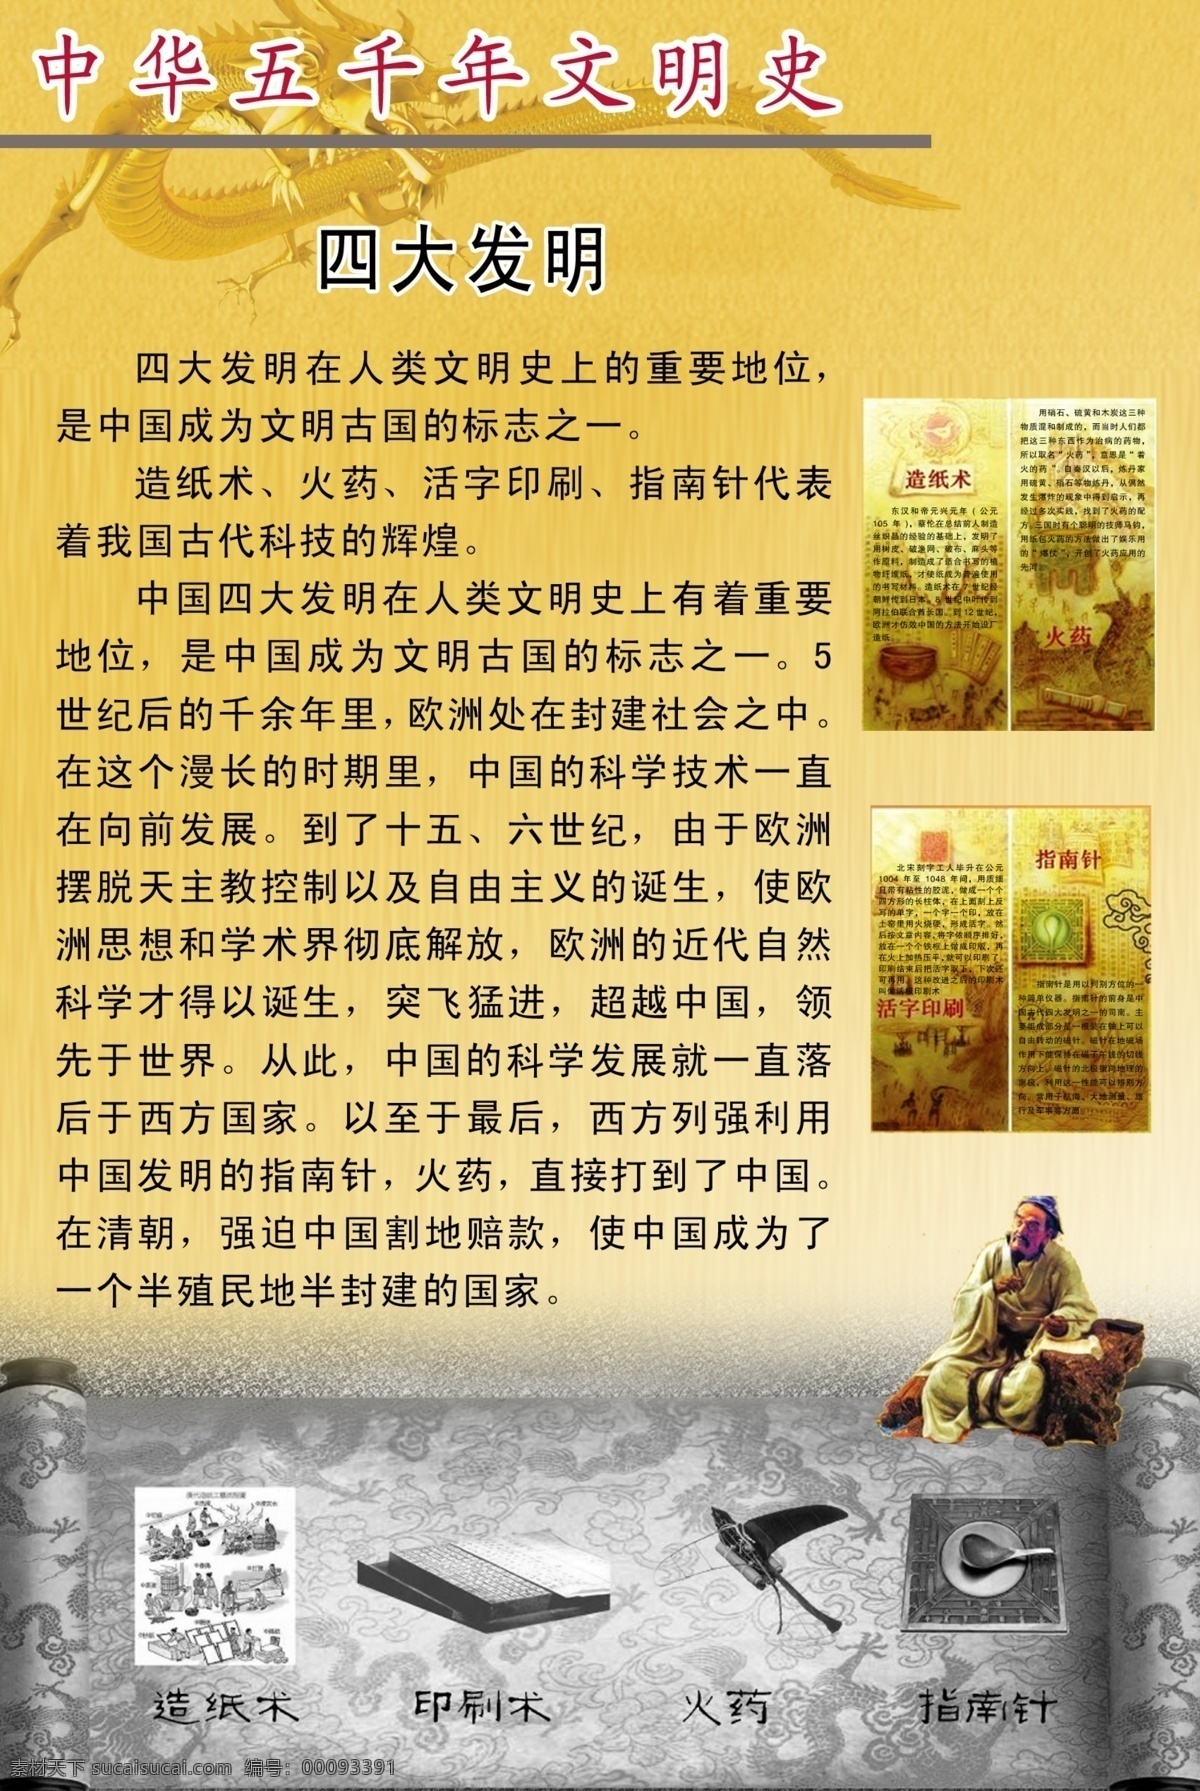 中华 五 千年 文明史 四大发明 孔子 金龙 展板模板 广告设计模板 源文件